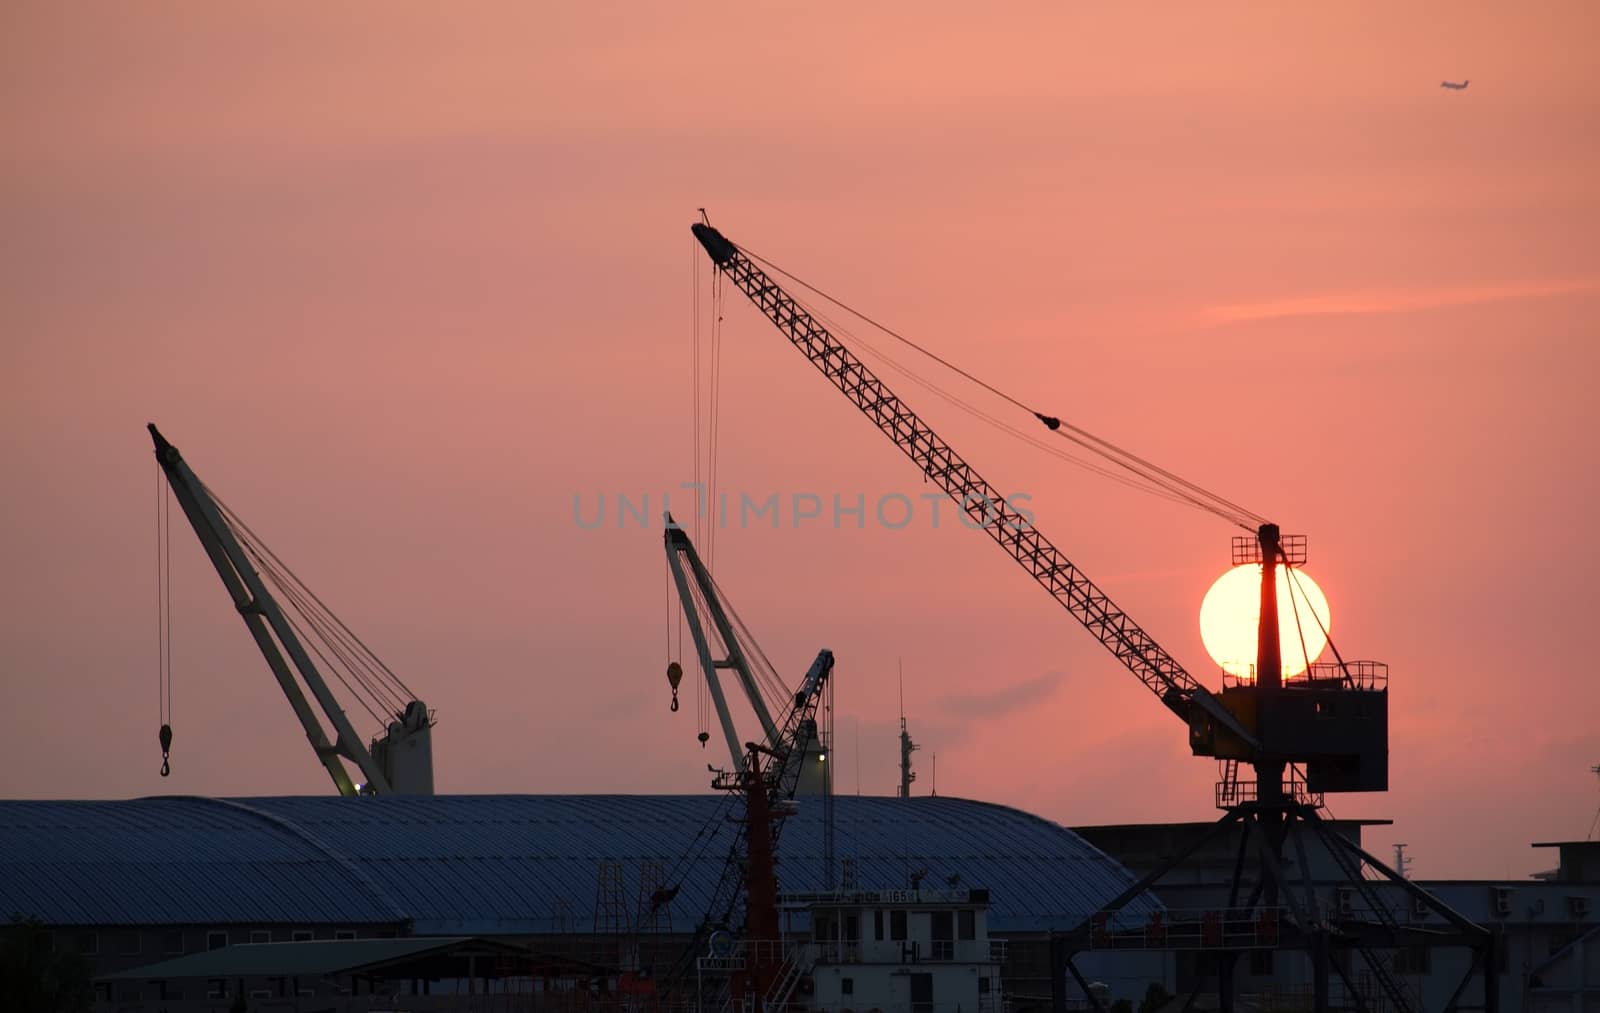 Cranes and Docks at Sunset by shiyali